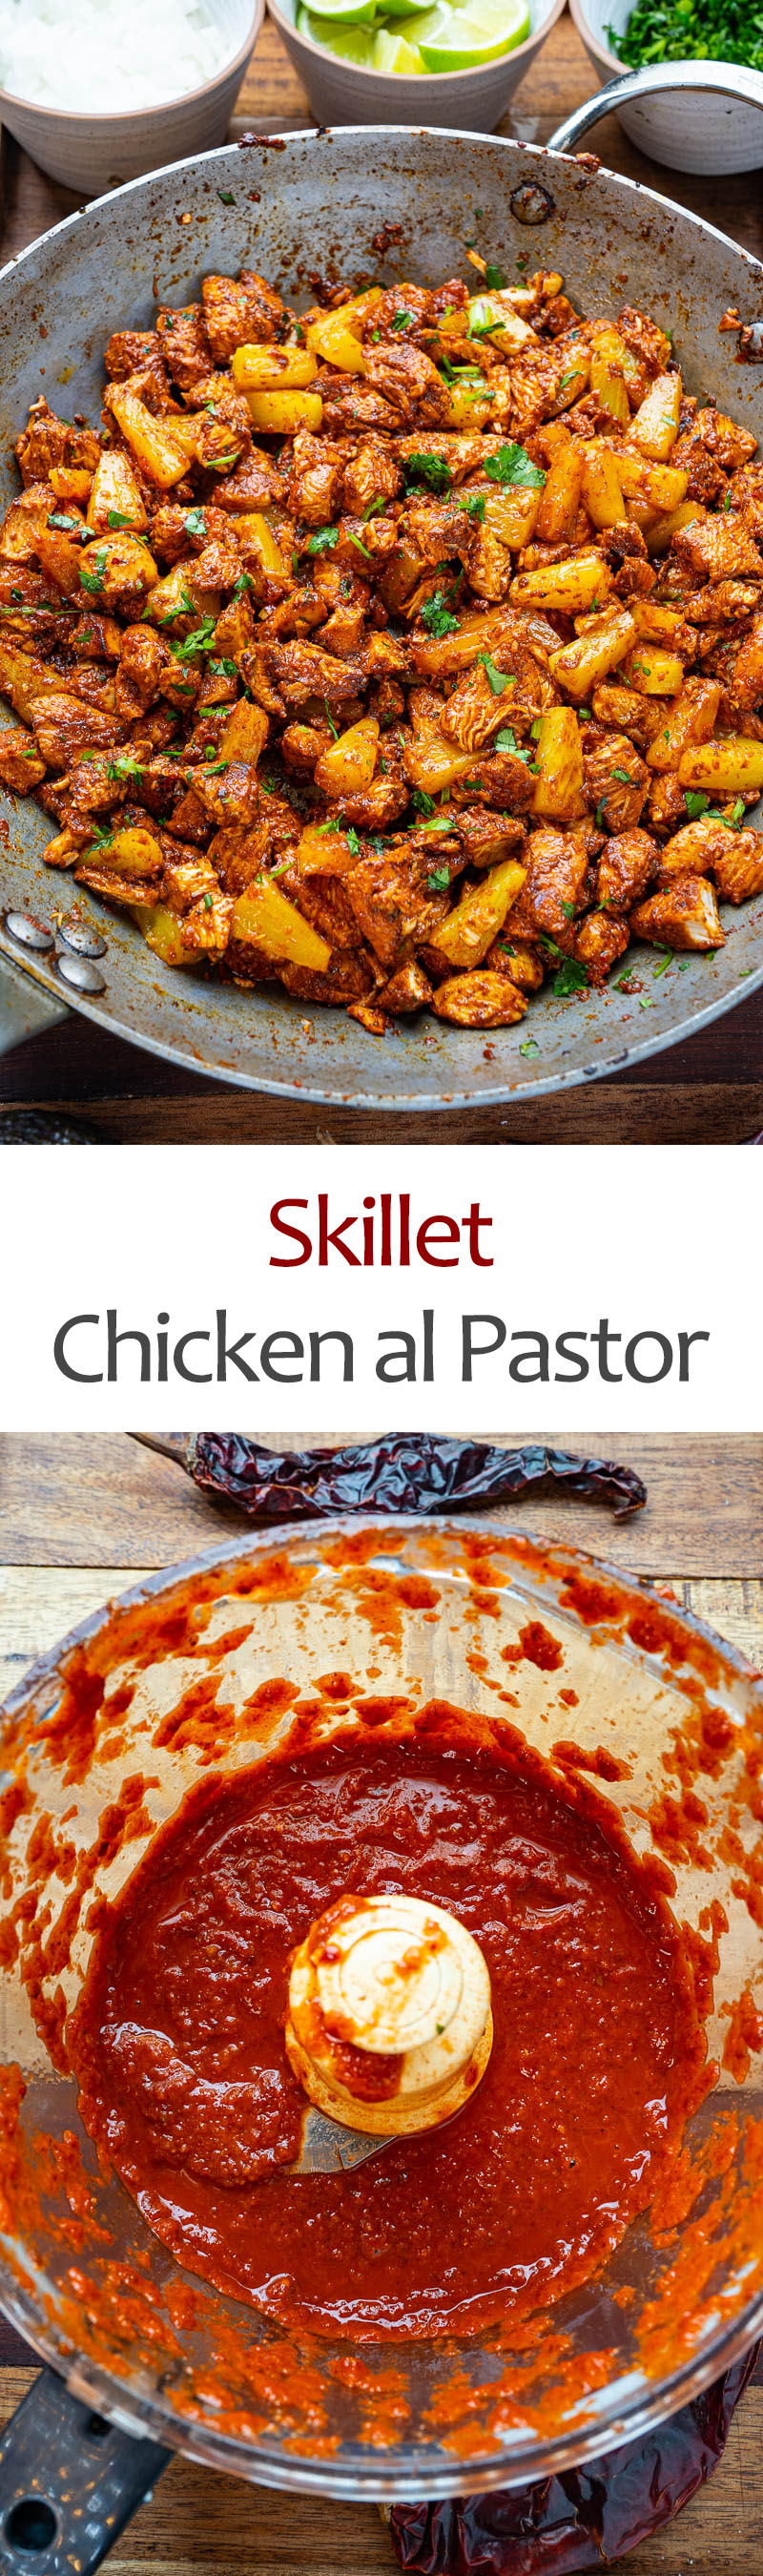 Skillet Chicken al Pastor